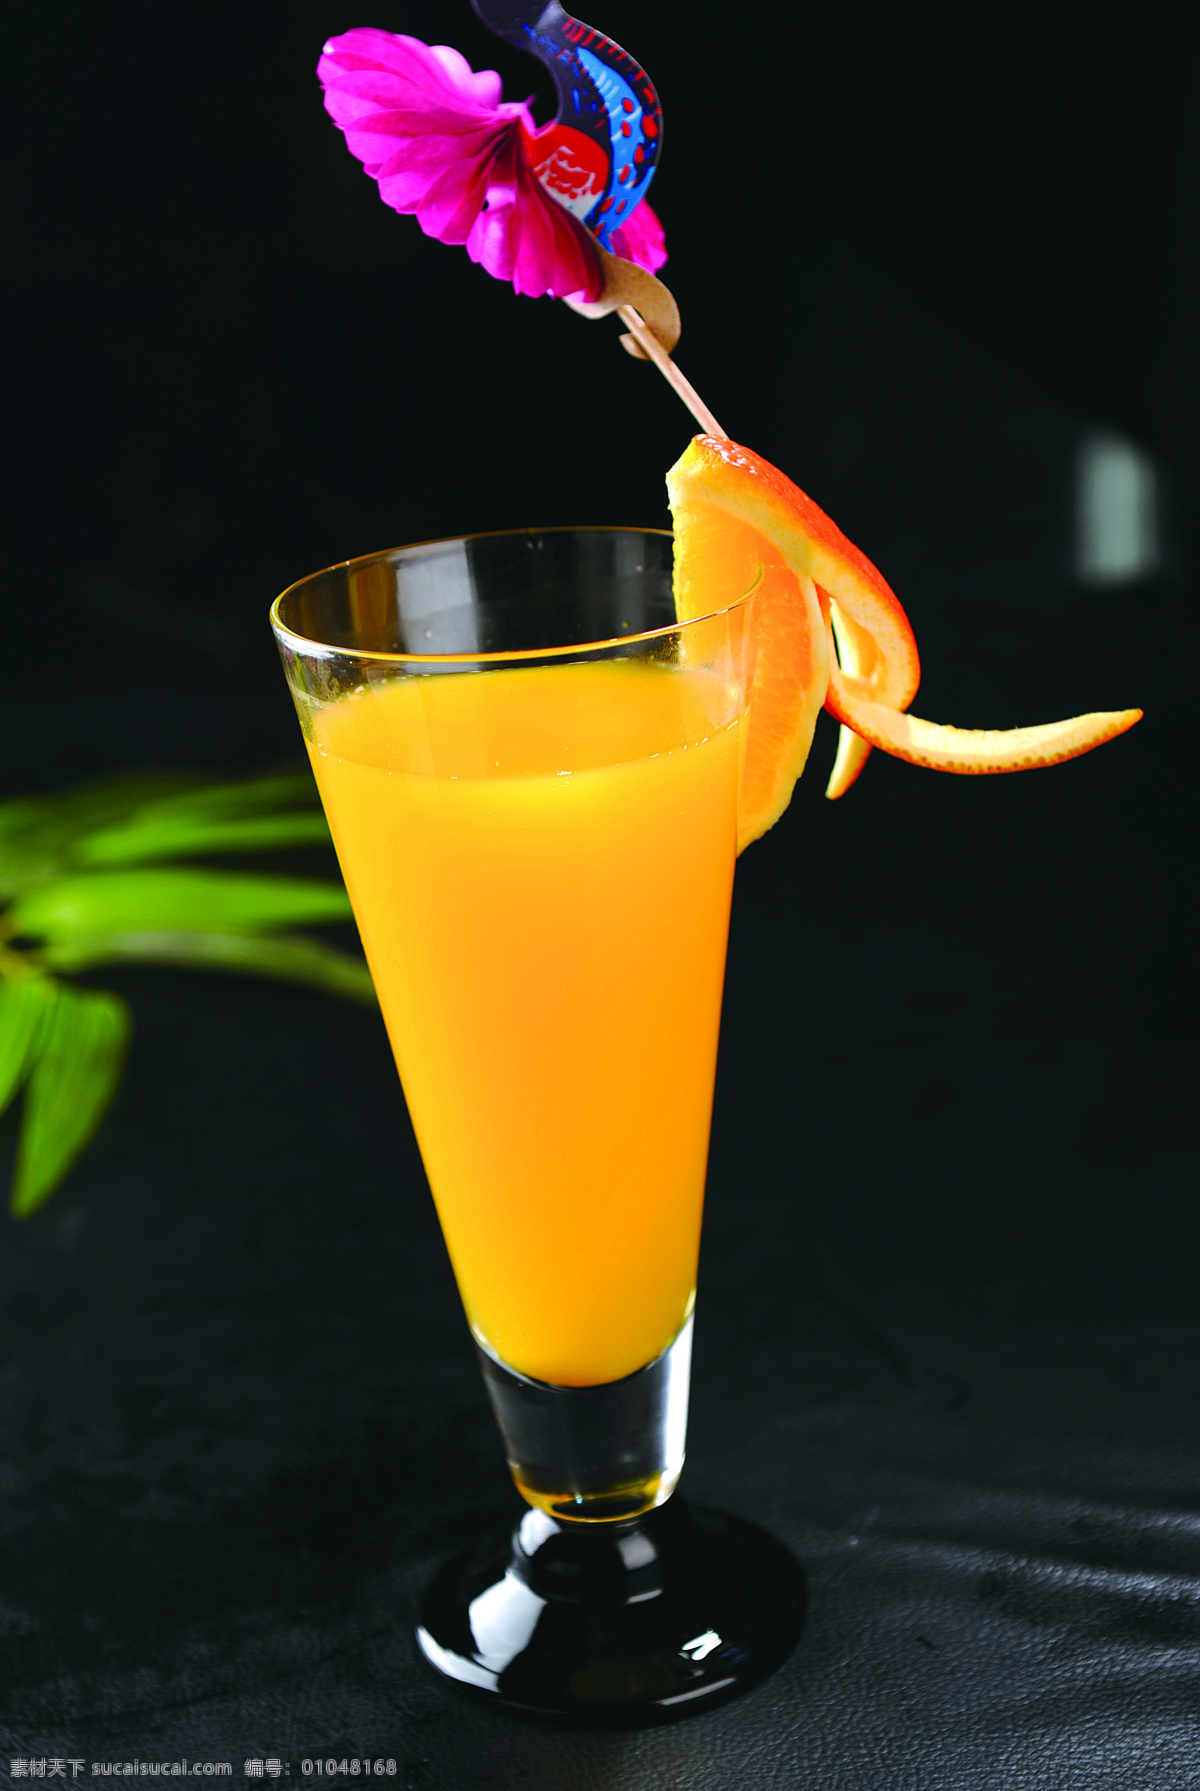 鲜榨柳橙汁 鲜榨橙汁 橙子 橙汁 柳橙汁 果汁 水果 饮料 解渴 食品饮料 饮料酒水 果汁饮料 餐饮美食